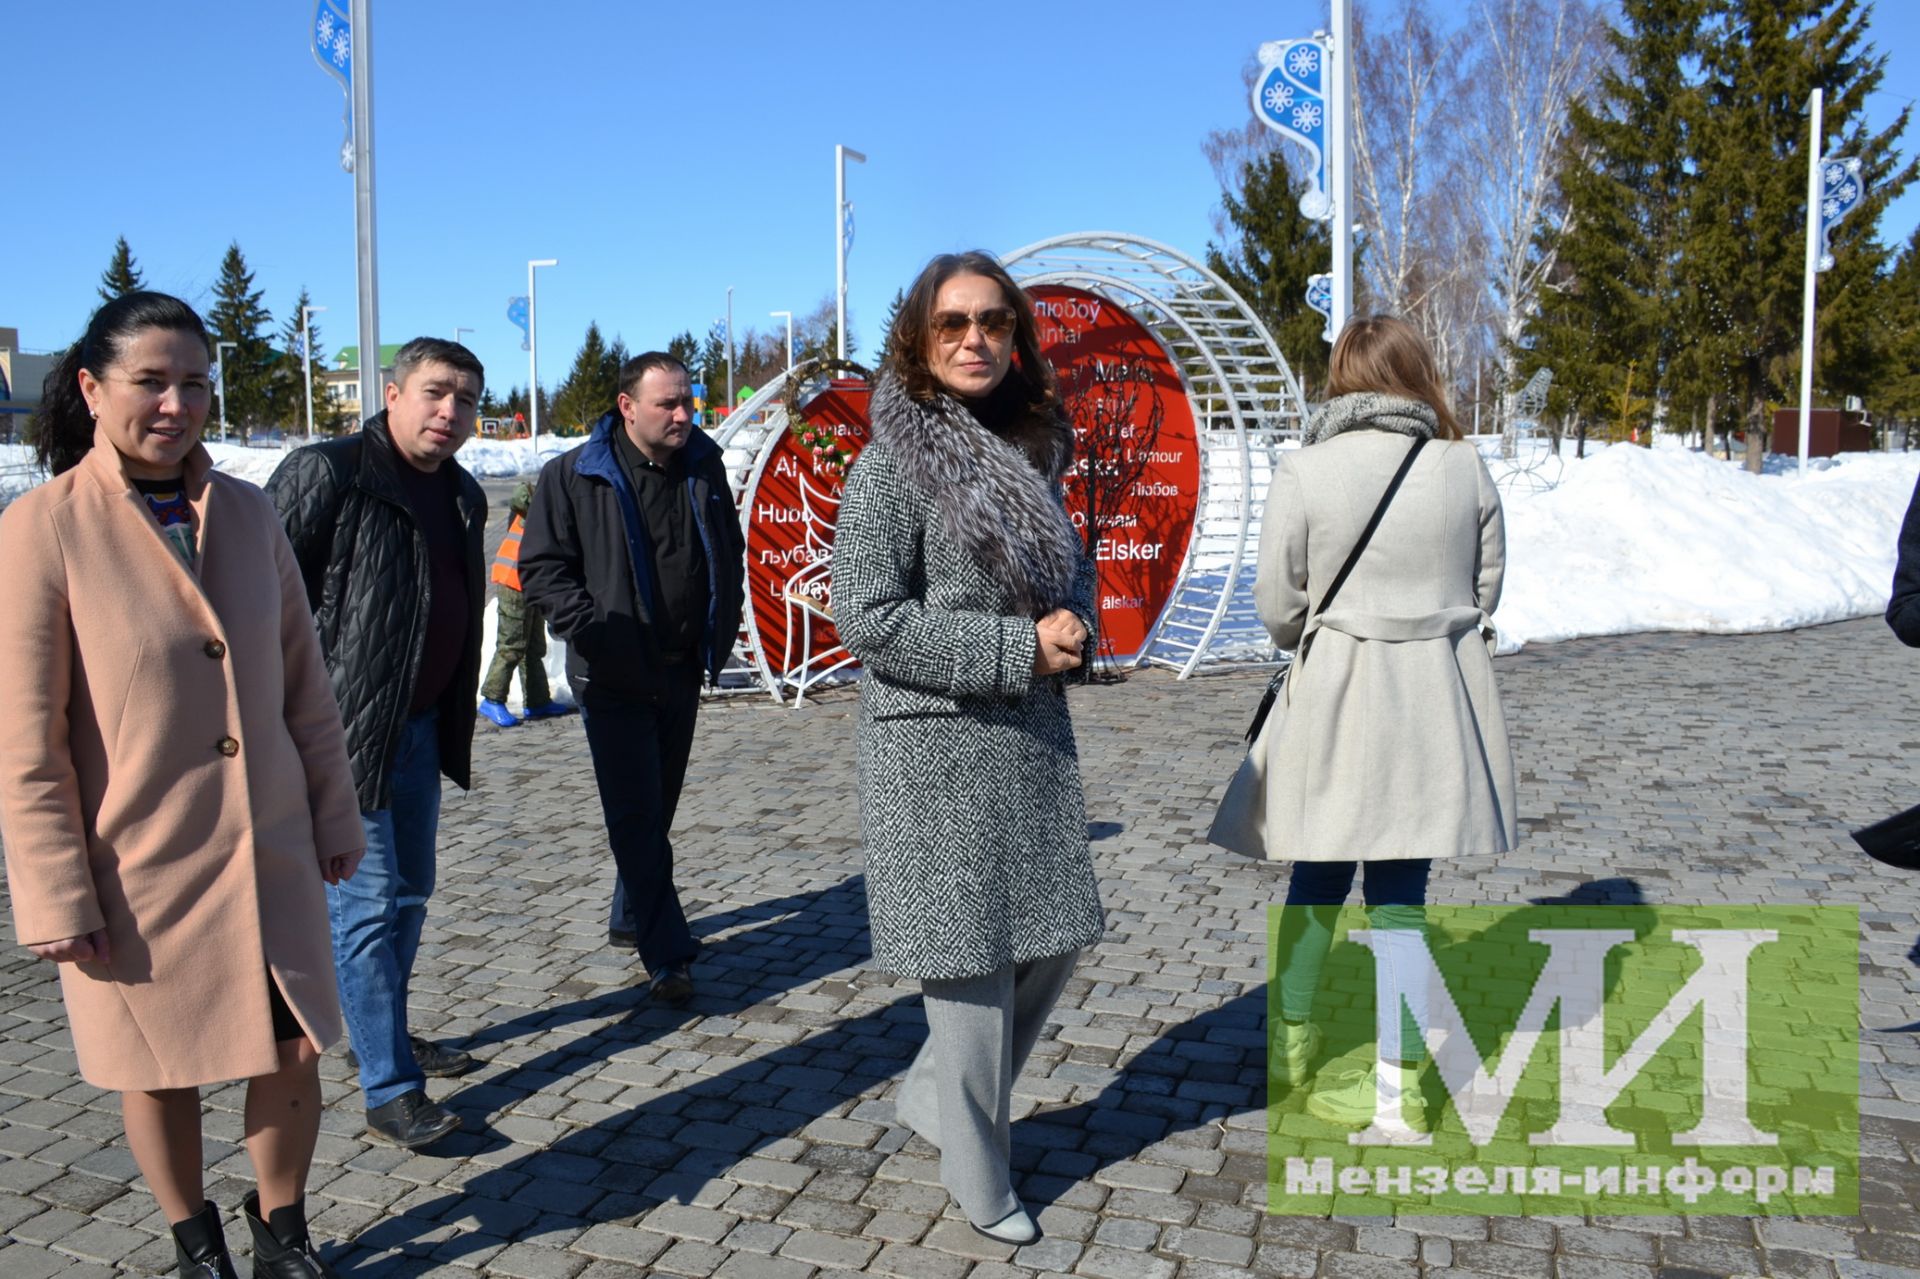 Проект «Формирование комфортной городской среды» преображает Мензелинск